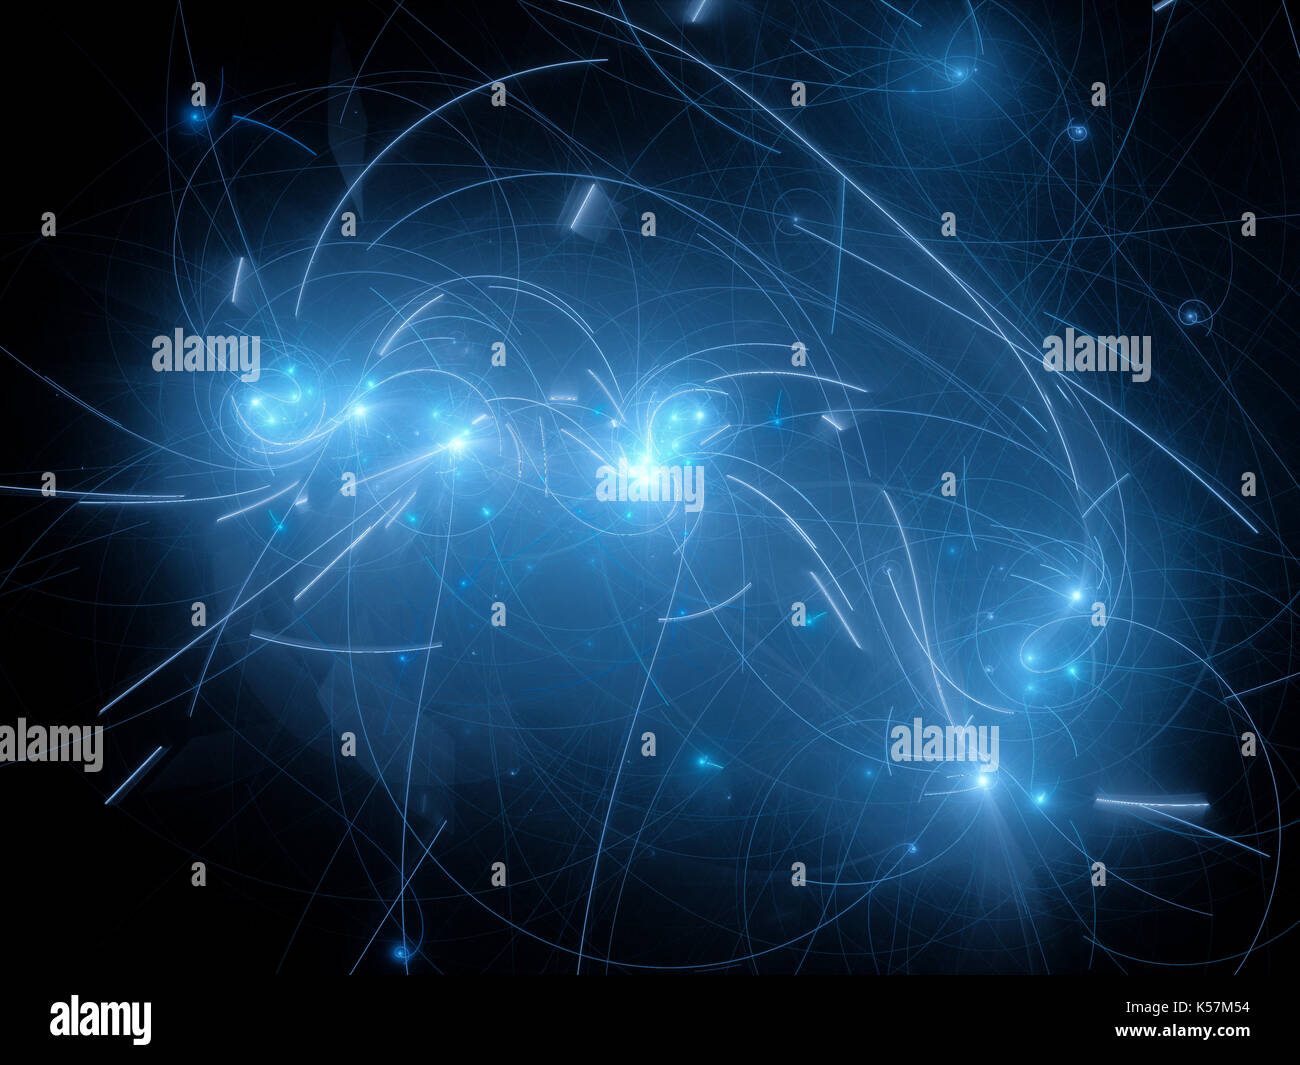 Blau leuchtende Sterne mit Flugbahn Kurven im Raum, Computer-generierte Zusammenfassung Hintergrund, 3D-Rendering Stockfoto